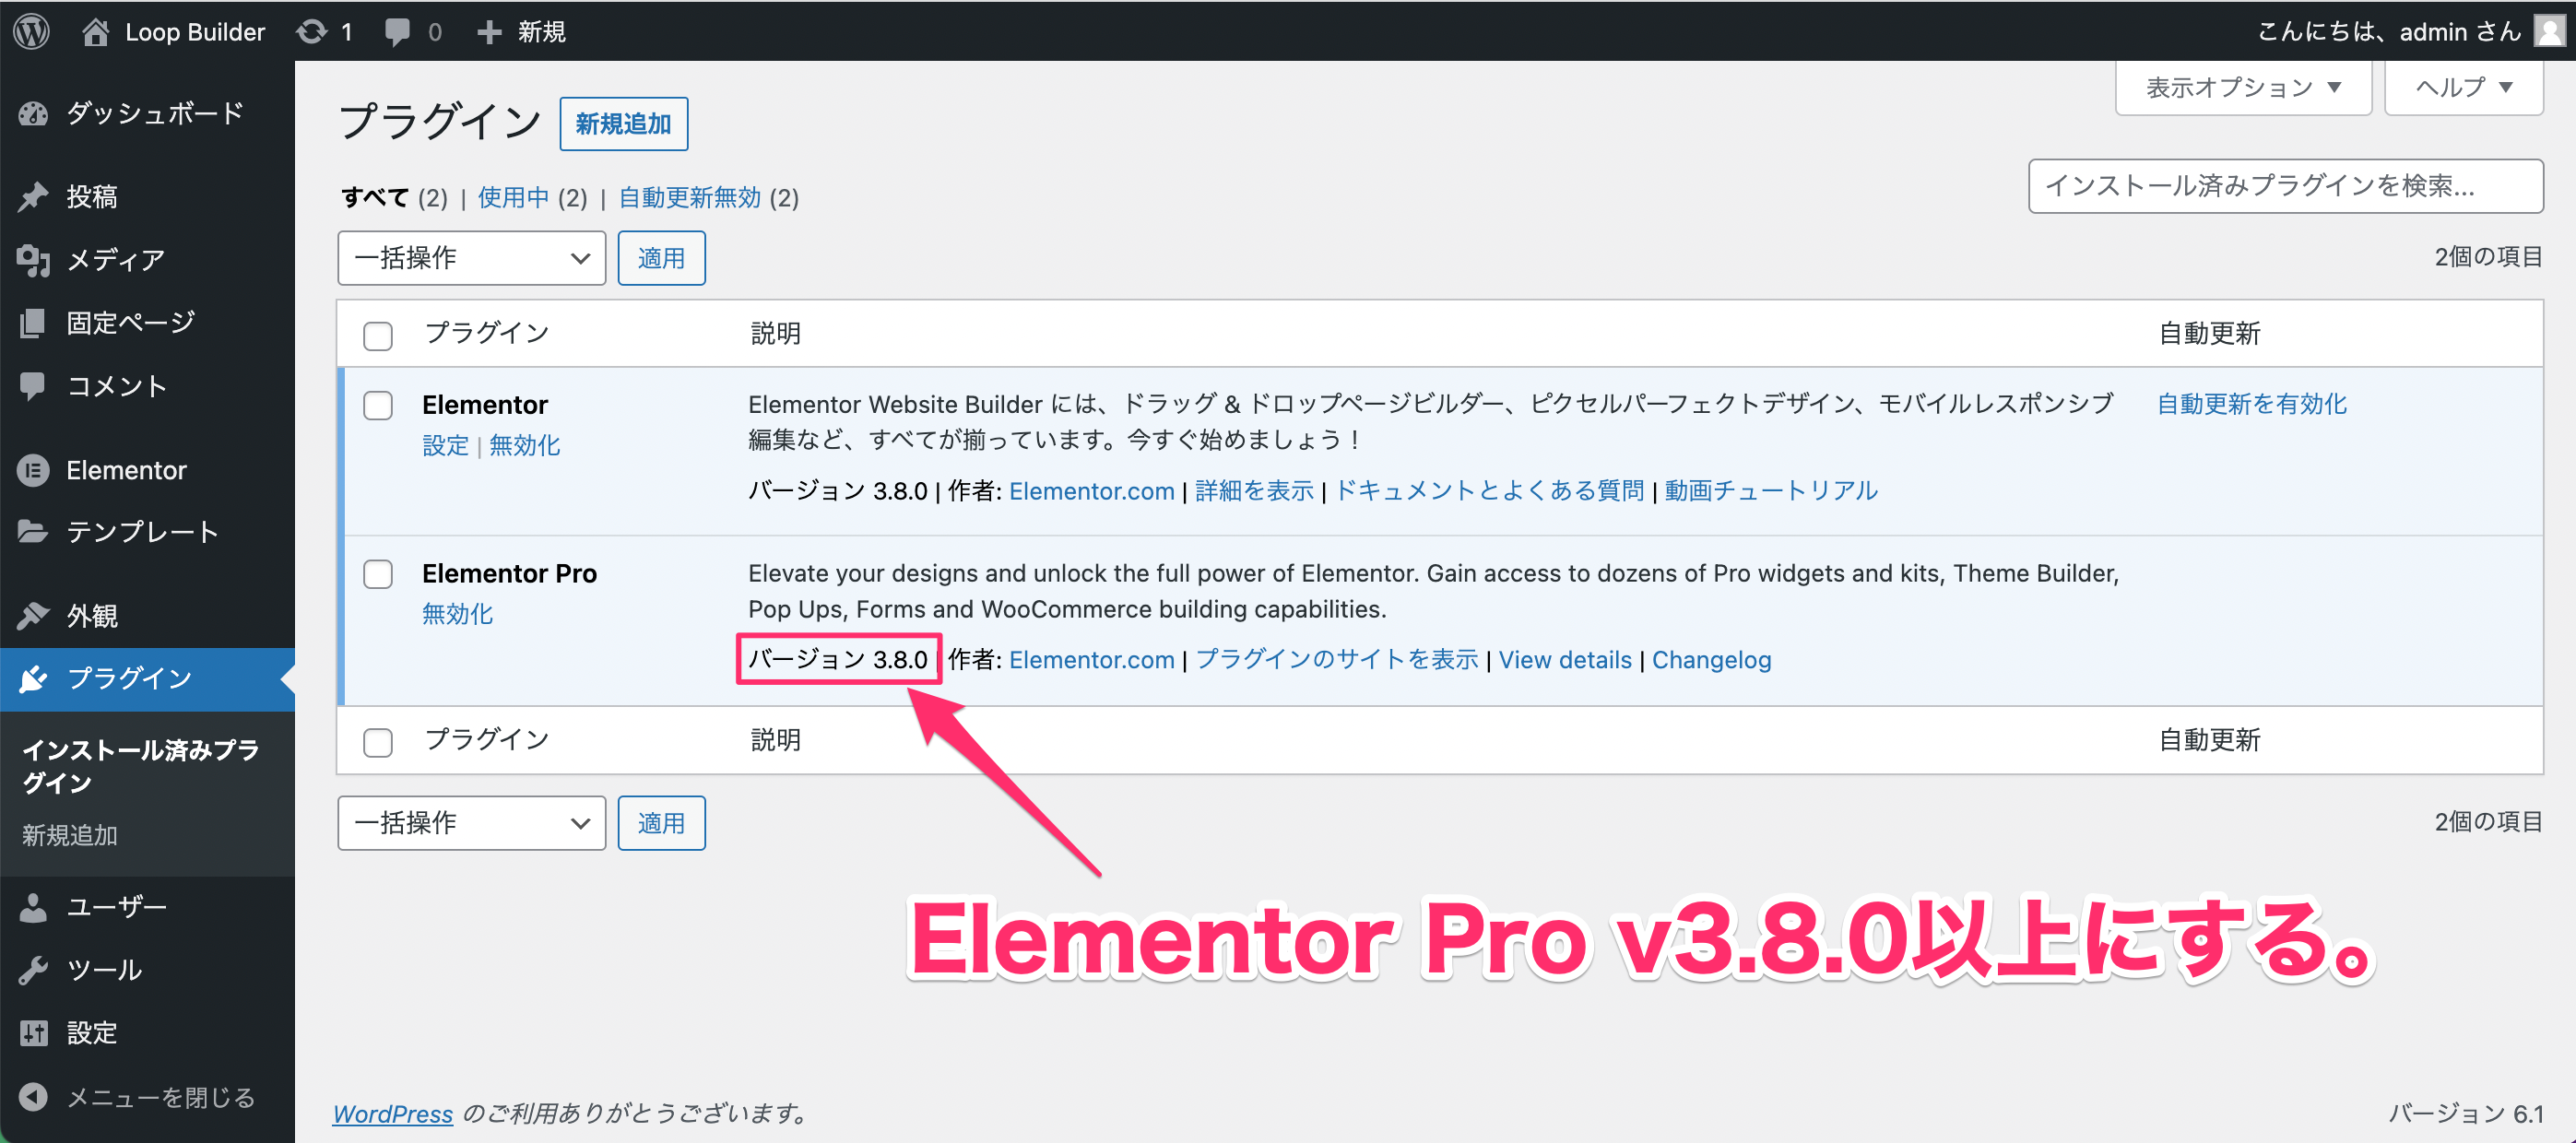 Elementor Pro v3.8.0にアップデート